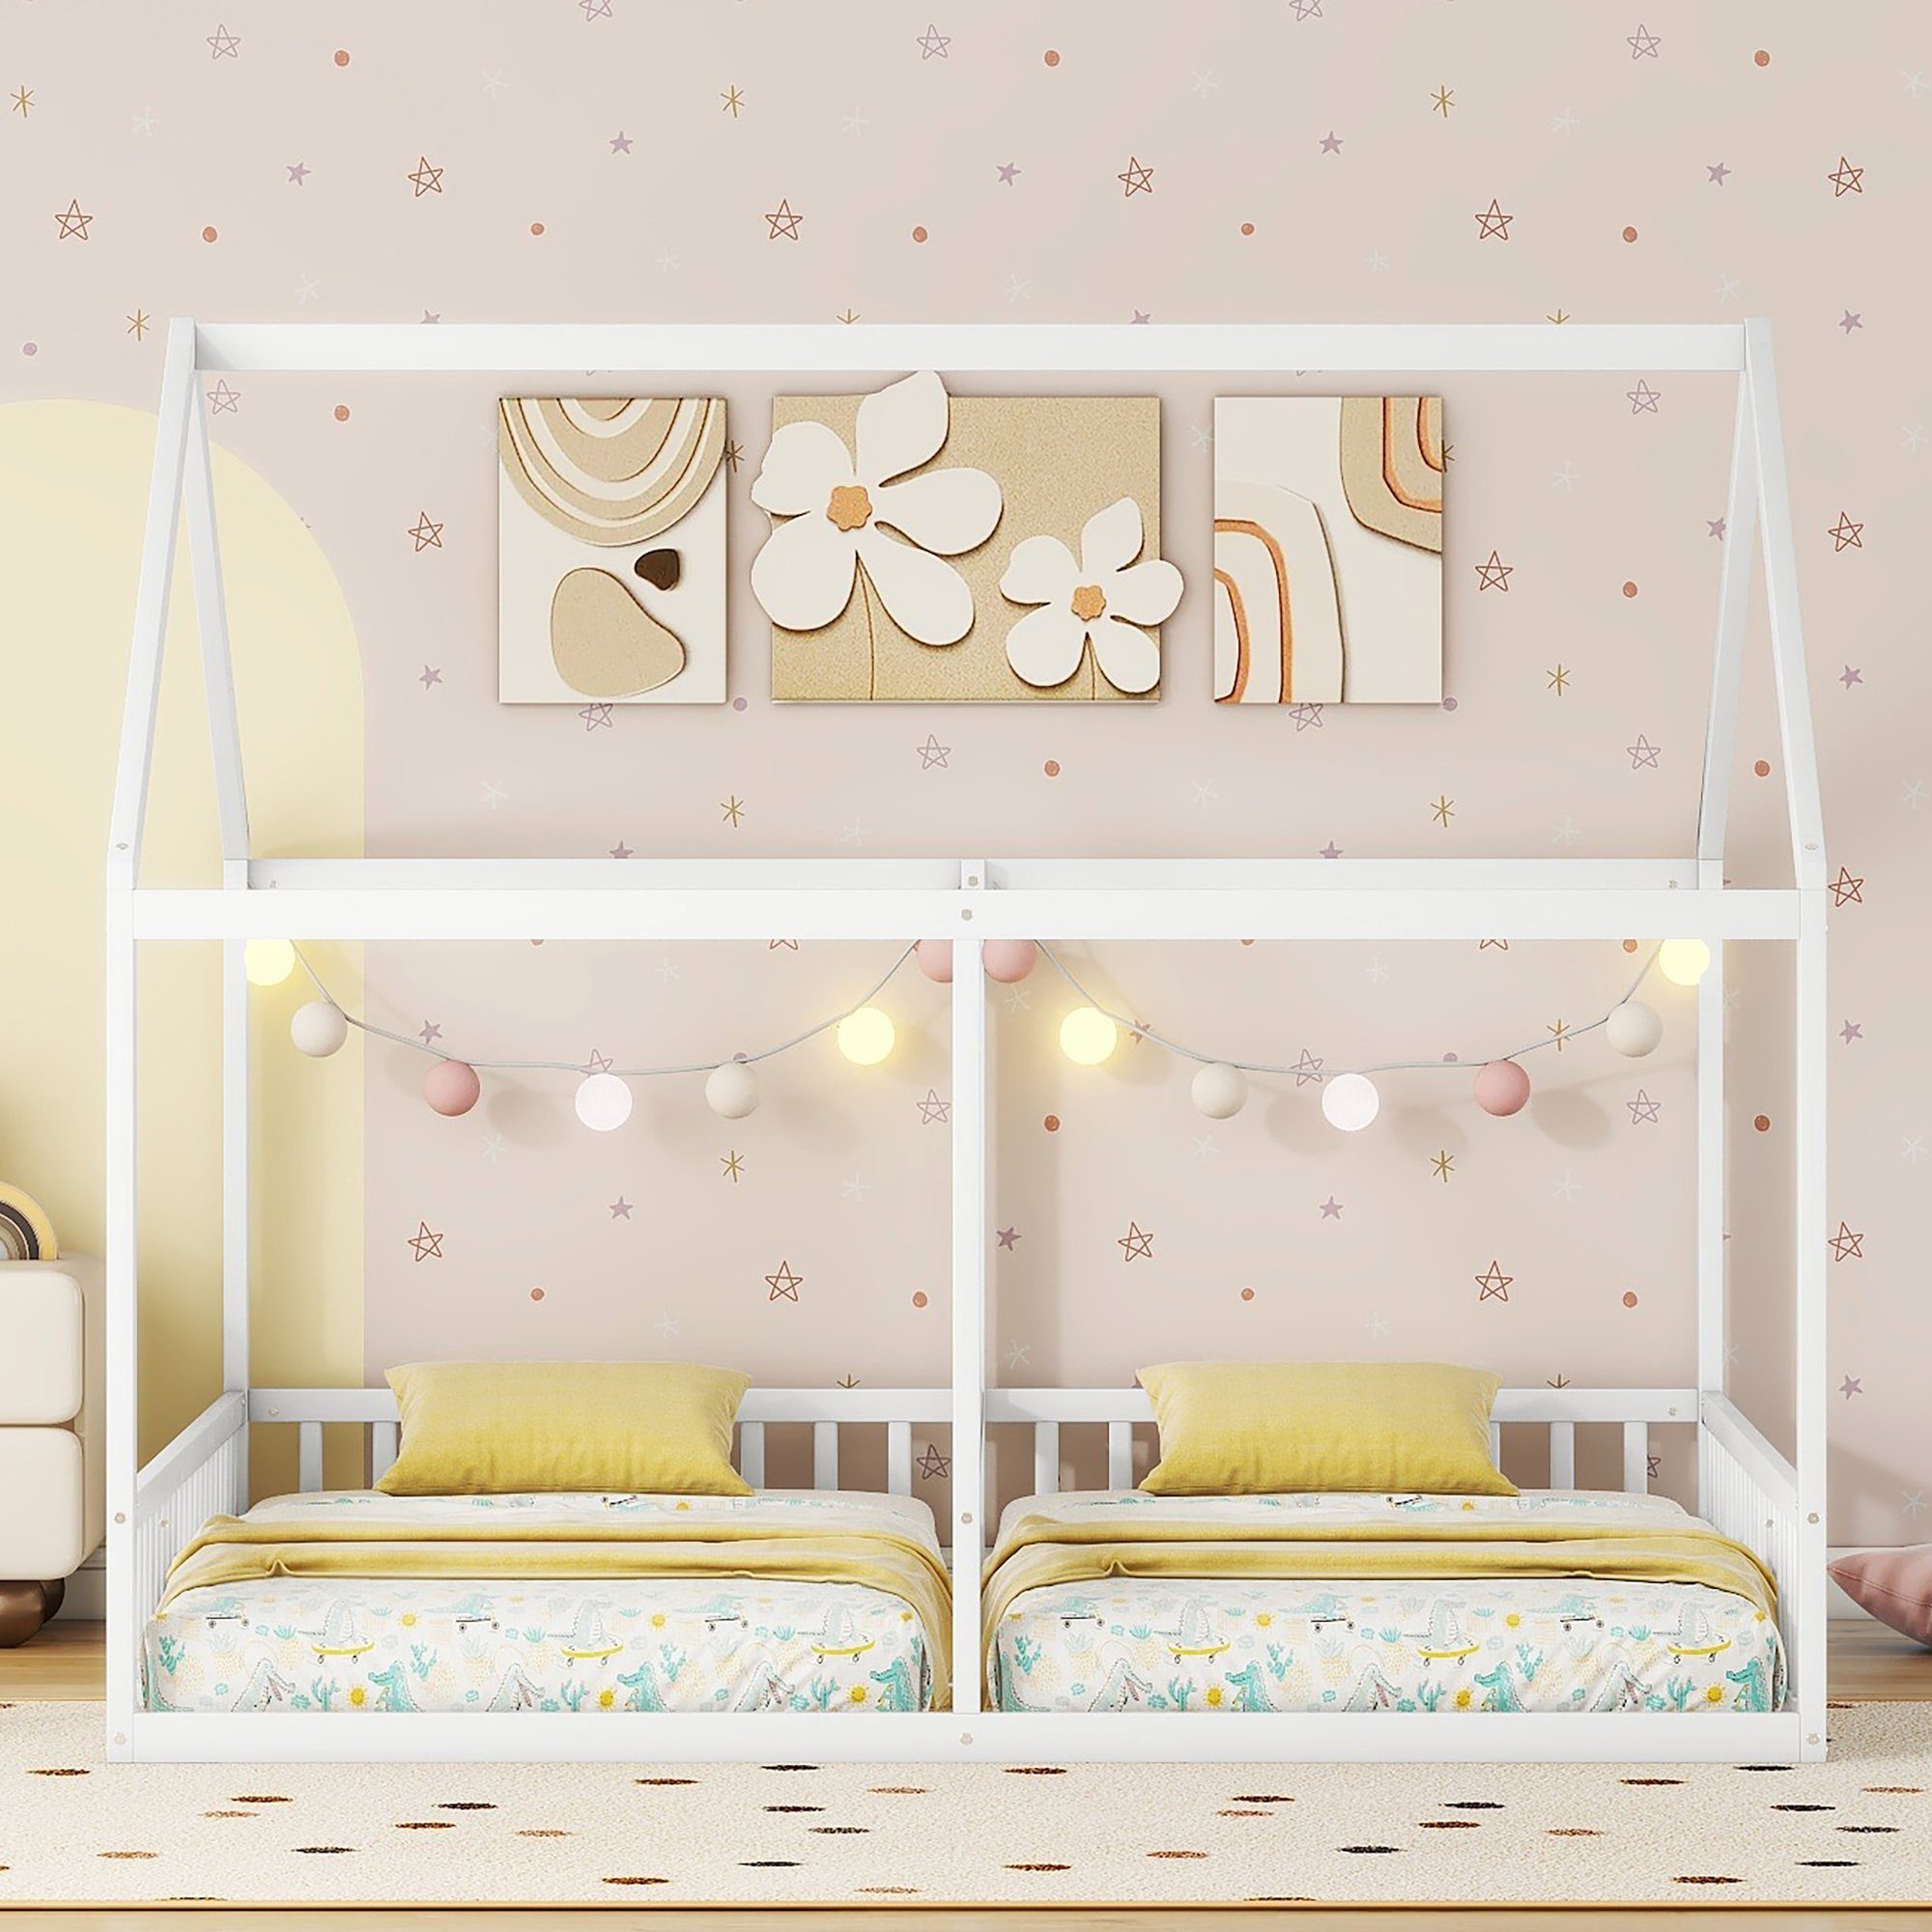 REDOM Kinderbett Holzbett Funktionsbett 2-in-1-Betten Einzelbetten 90X200 Betten flache (Hausmodelle, Weiß cm), ohne Matratze